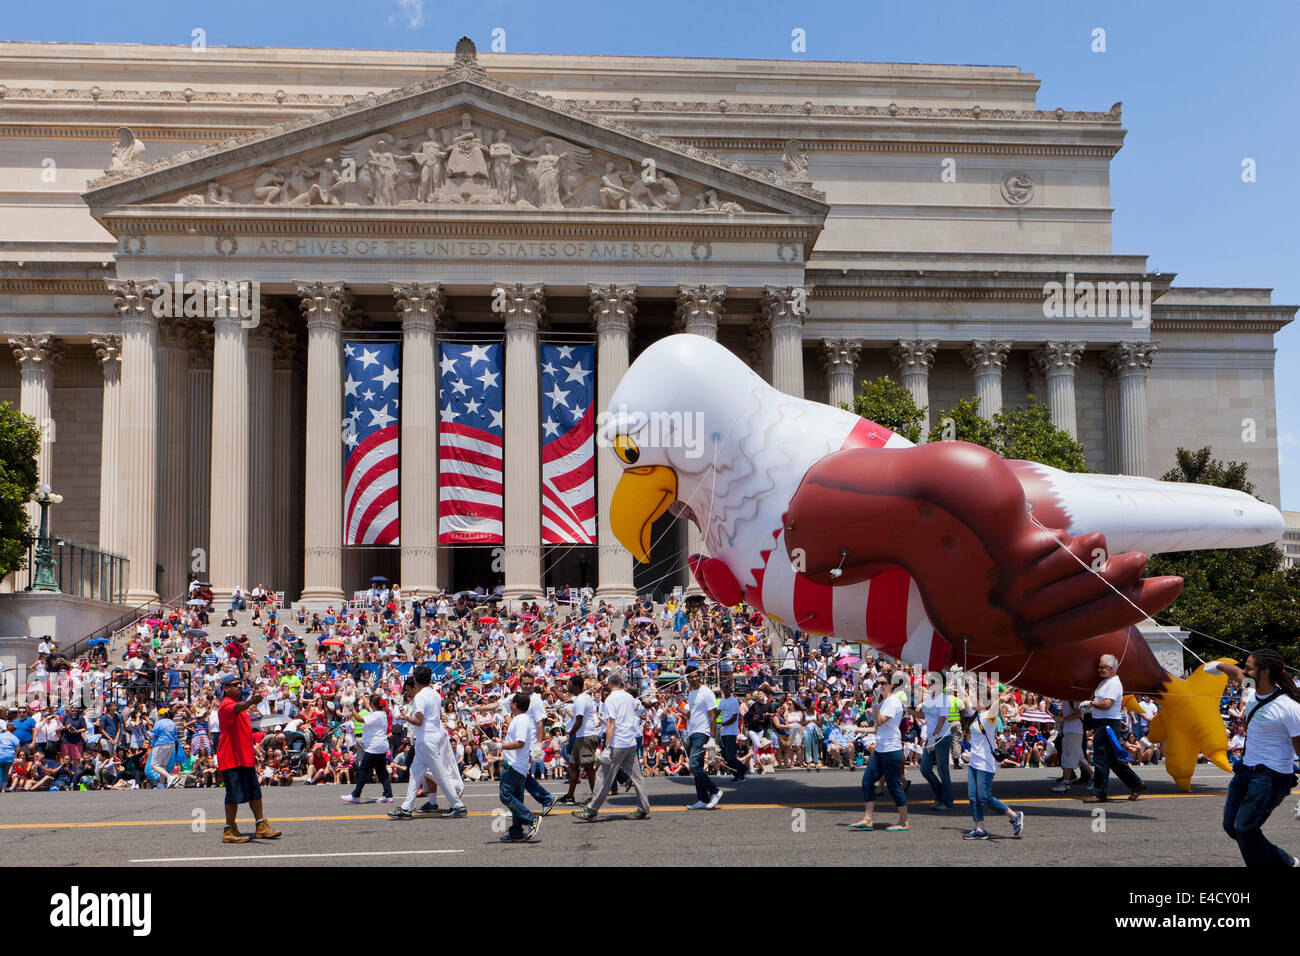 Bald eagle balloon float at Memorial Day parade - Washington, DC USA Stock Photo